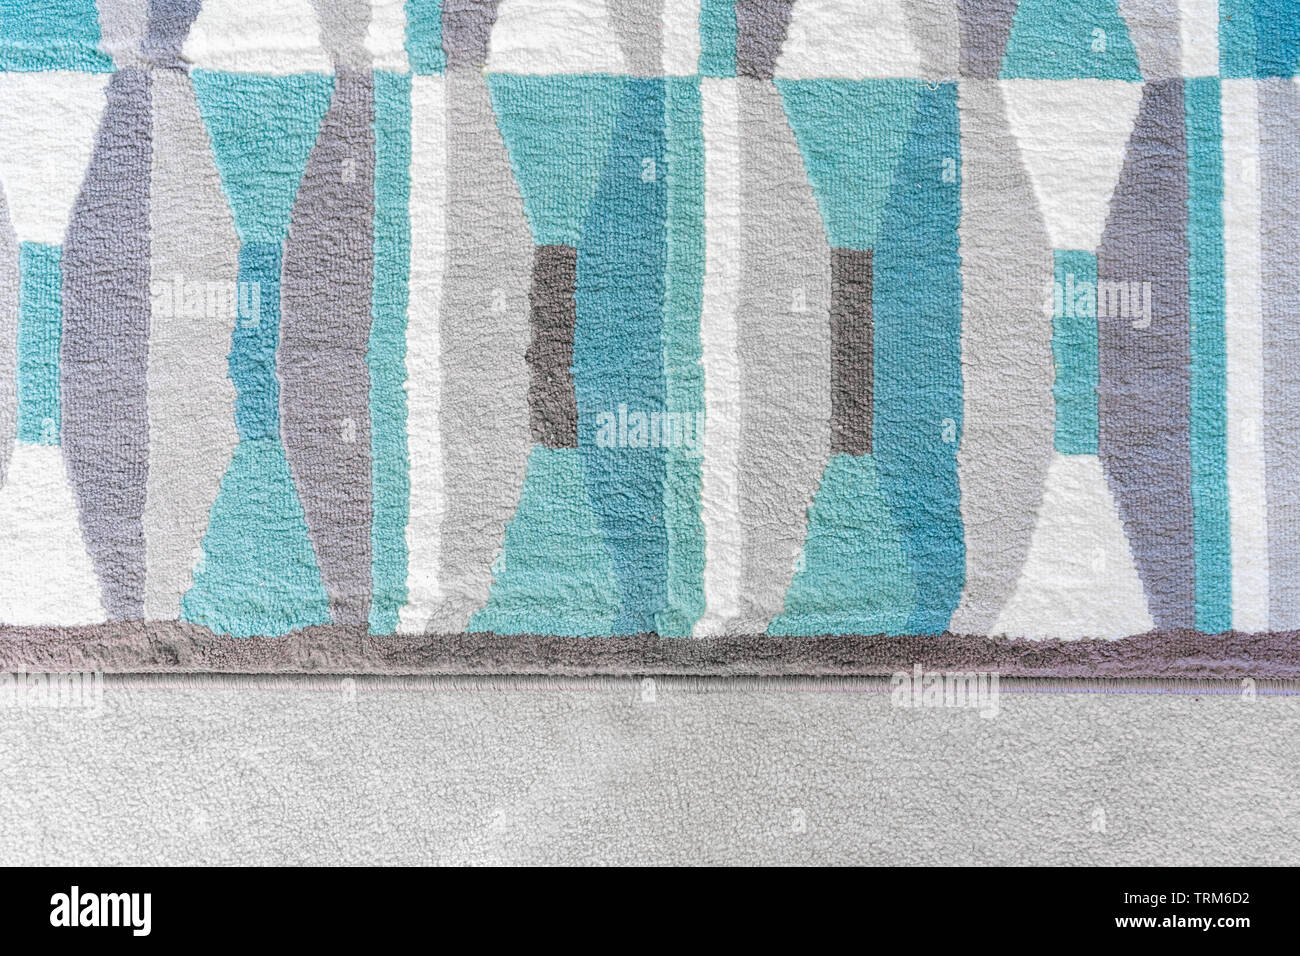 Gráfico de fondo, vista superior del geométrico alfombra con patrones de color azul y gris, en la parte superior de una alfombra beige, como un elemento de diseño en la decoración del hogar. Foto de stock